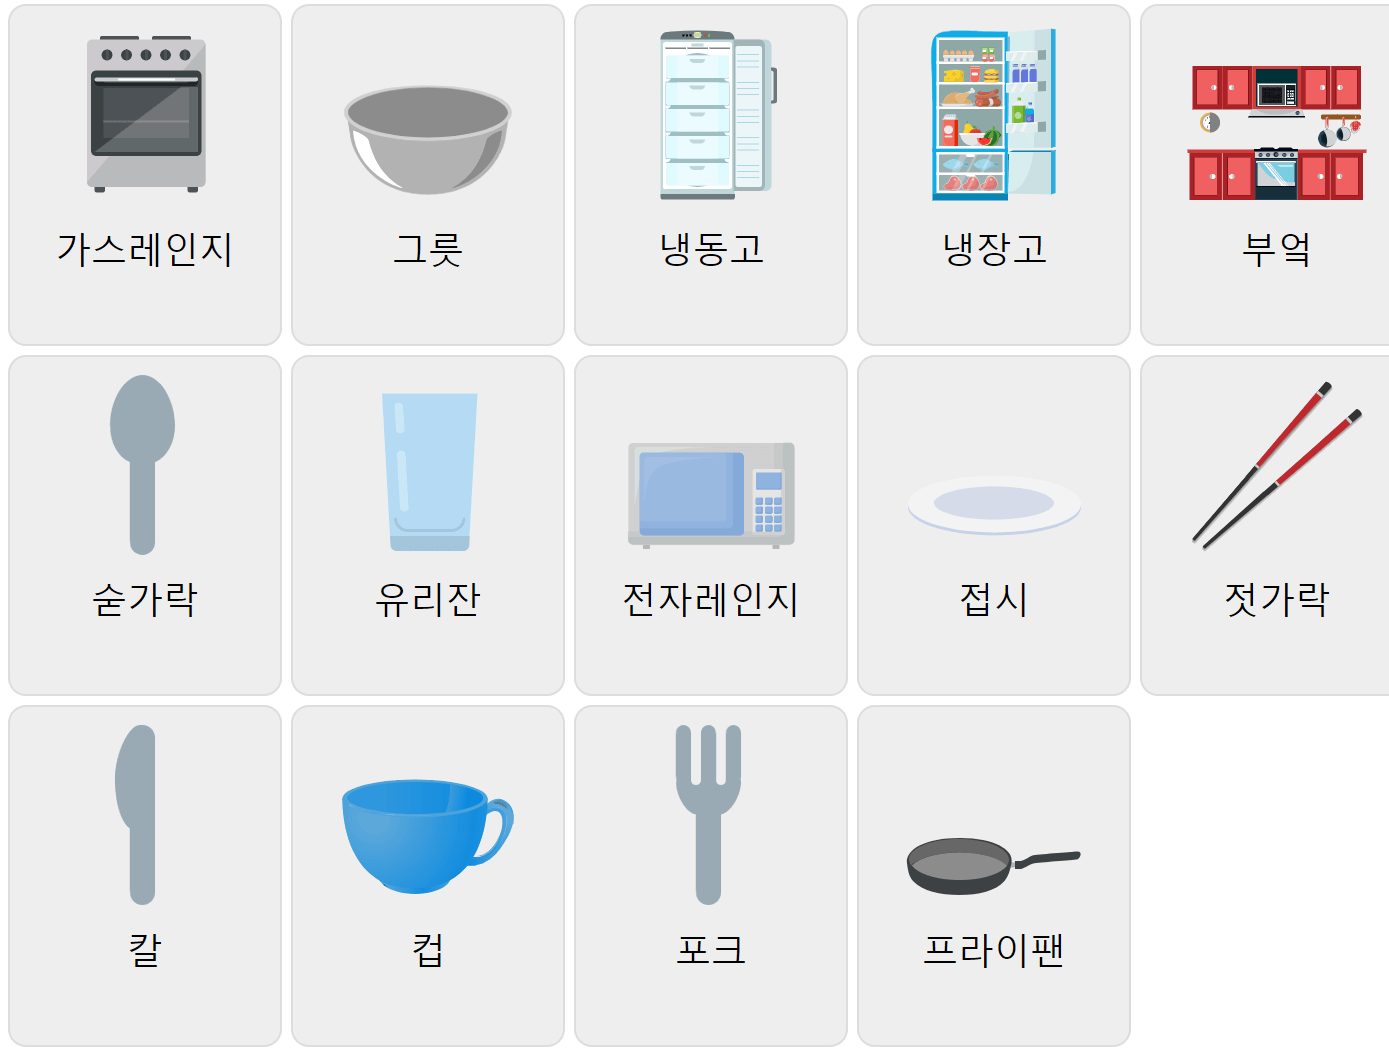 Кухонна лексика корейською мовою